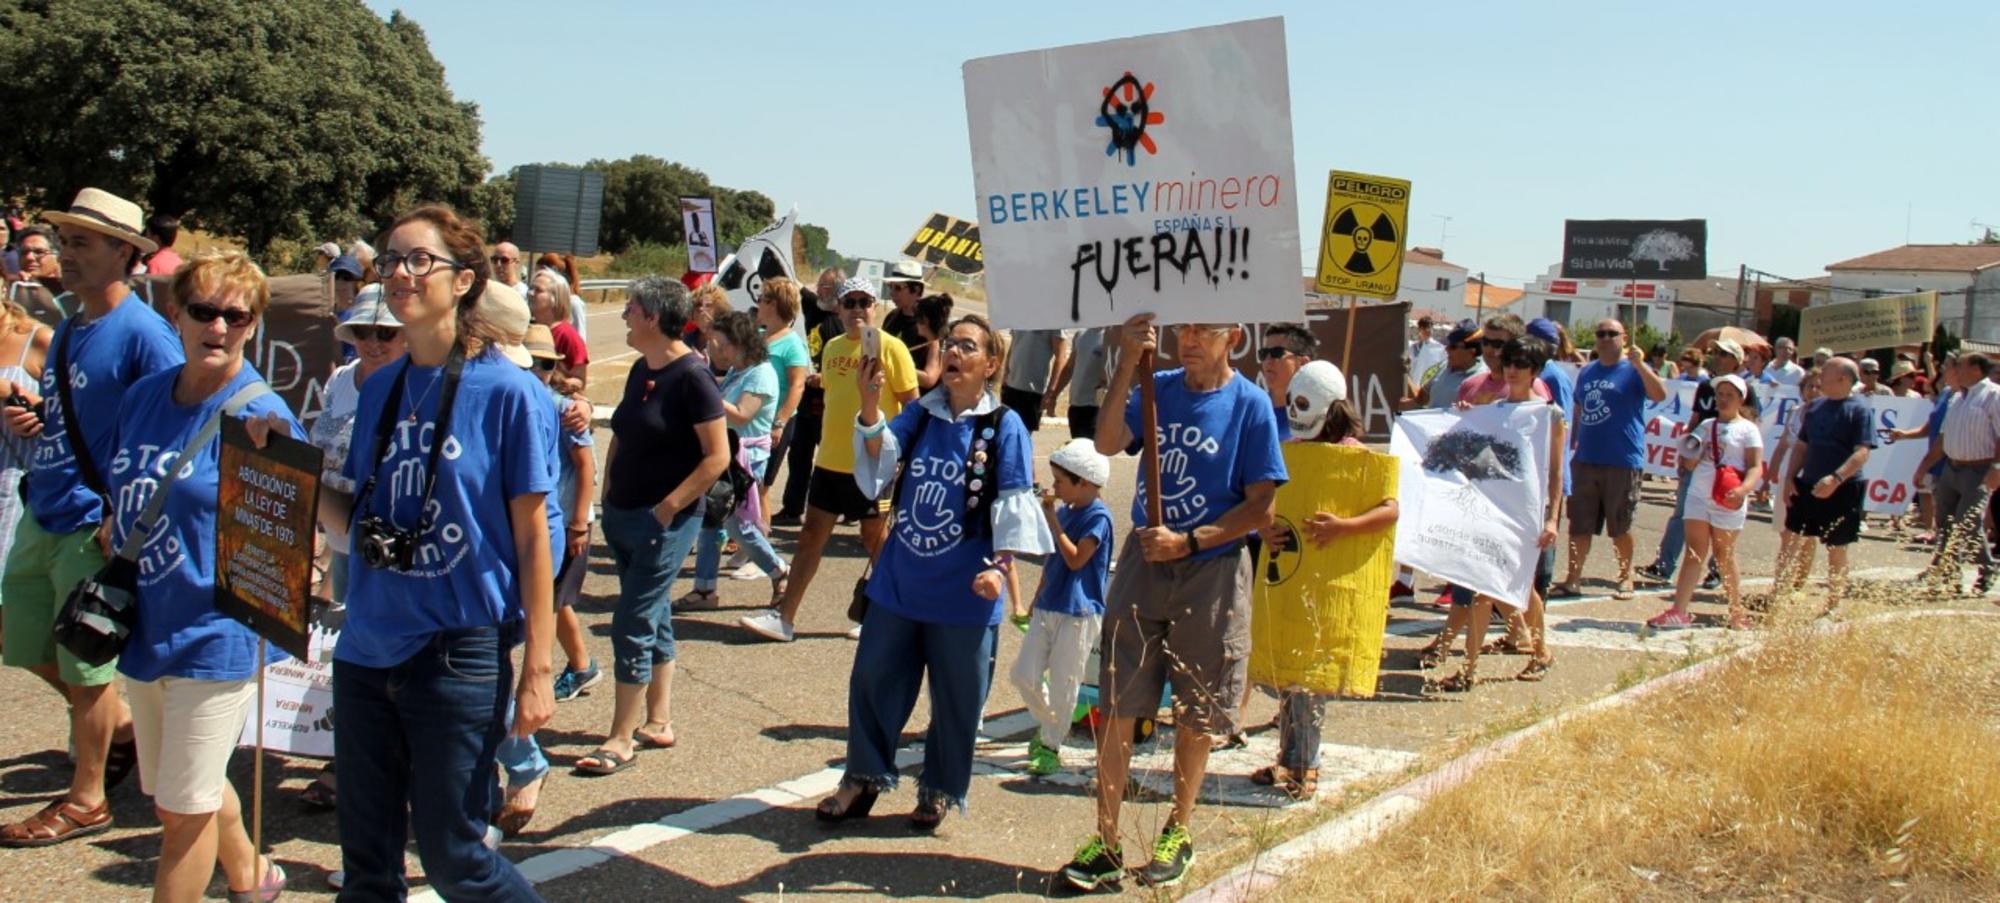 Manifestantes contra Berkeley Minera en Salamanca. Fuente: Stop Uranio